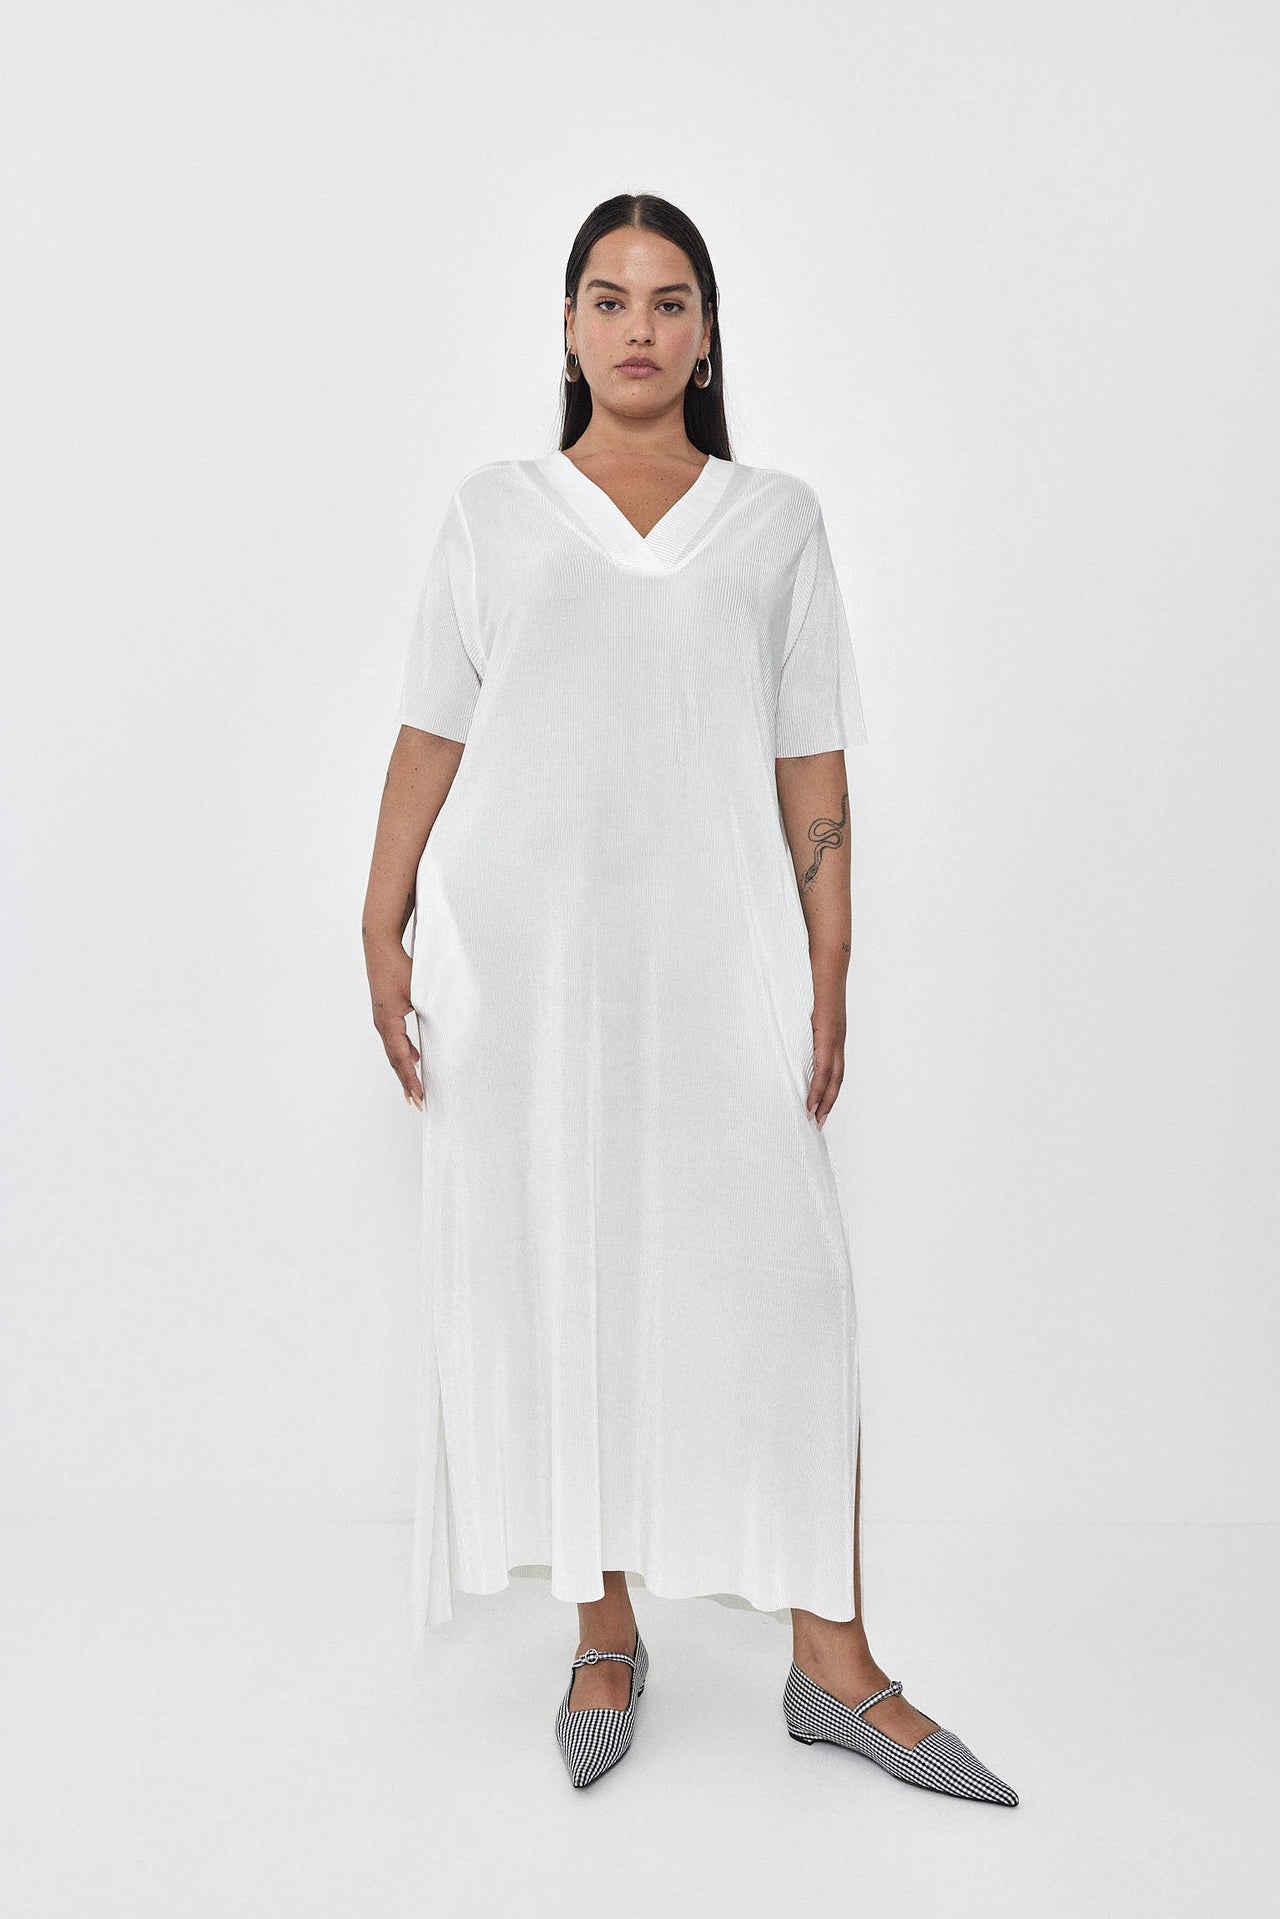 FLARE Dress S24 (L-XL) - Cream